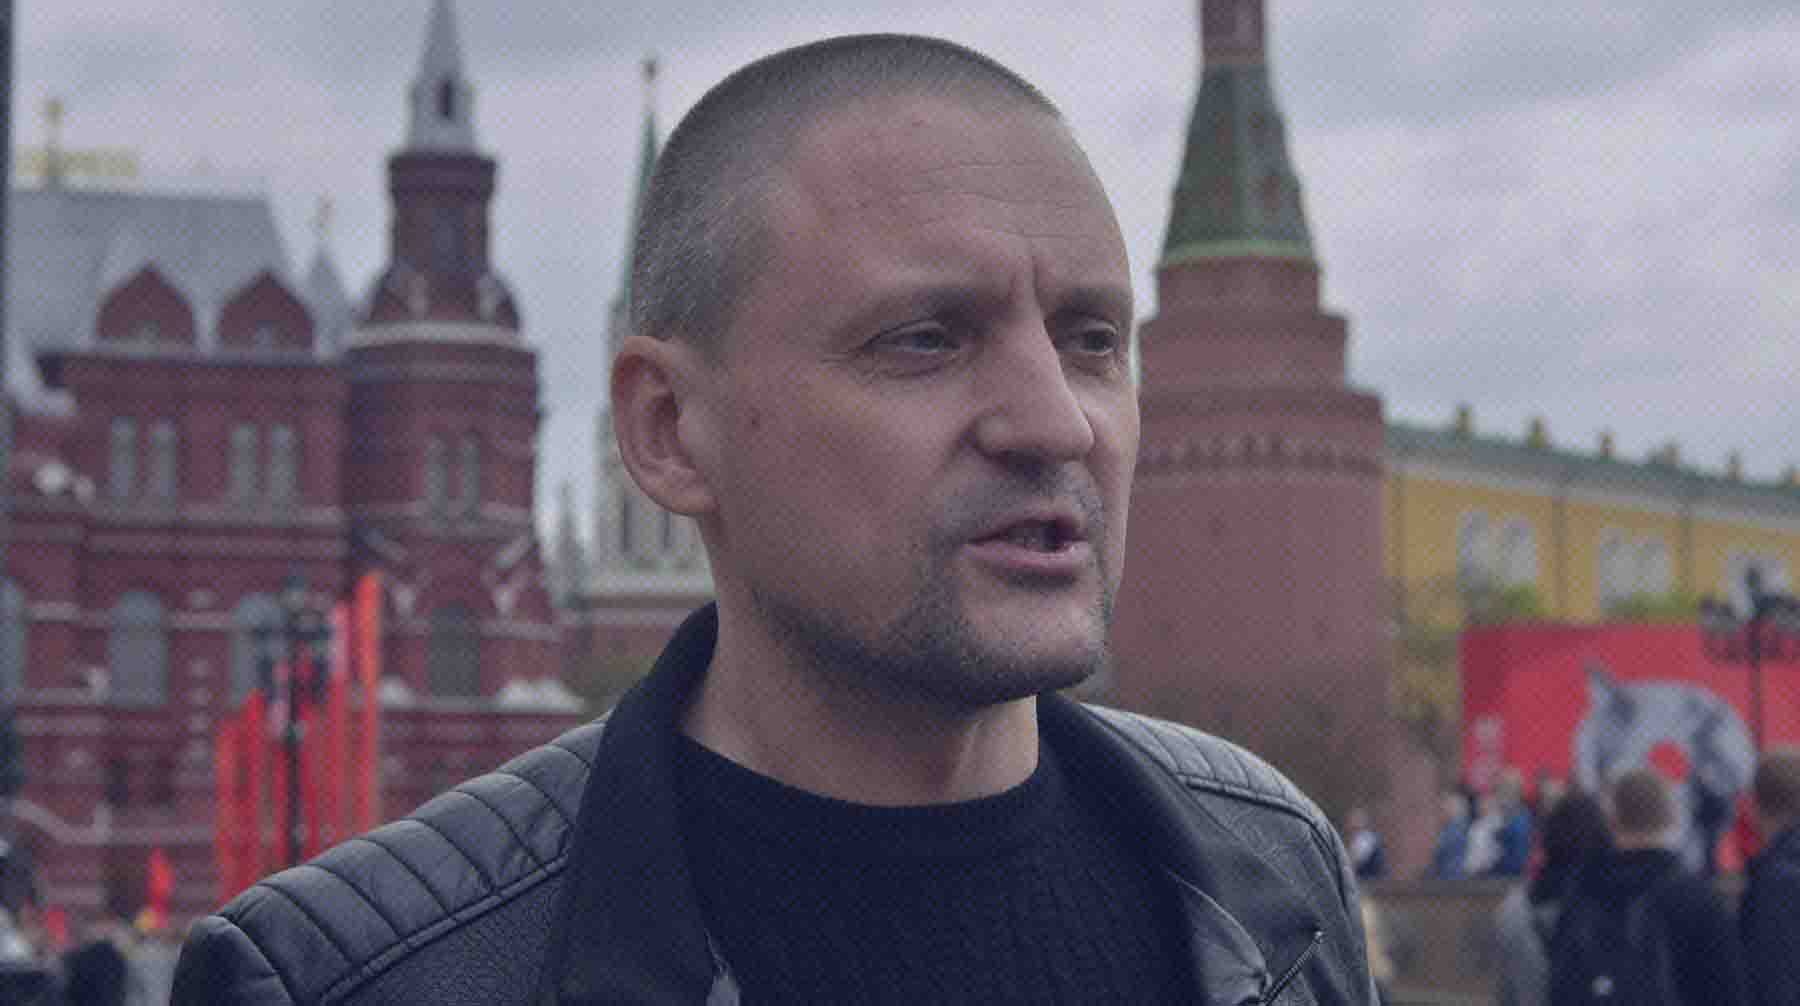 Dailystorm - В Москве на Красной площади задержали координатора «Левого фронта» Сергея Удальцова